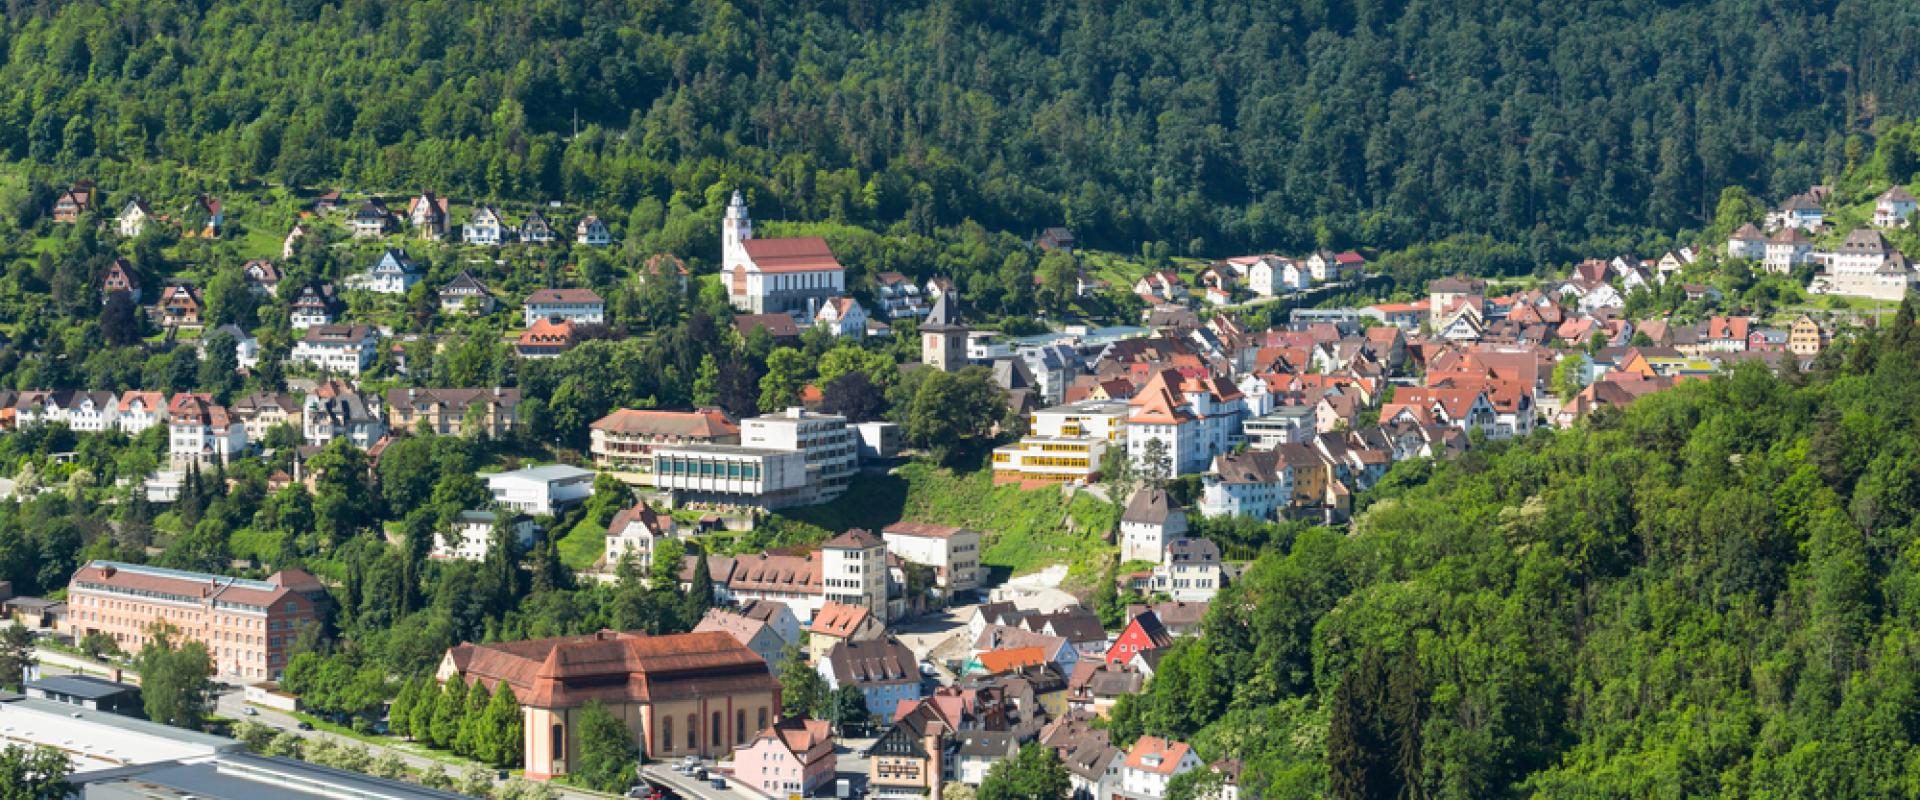 Oberndorf am Neckar 